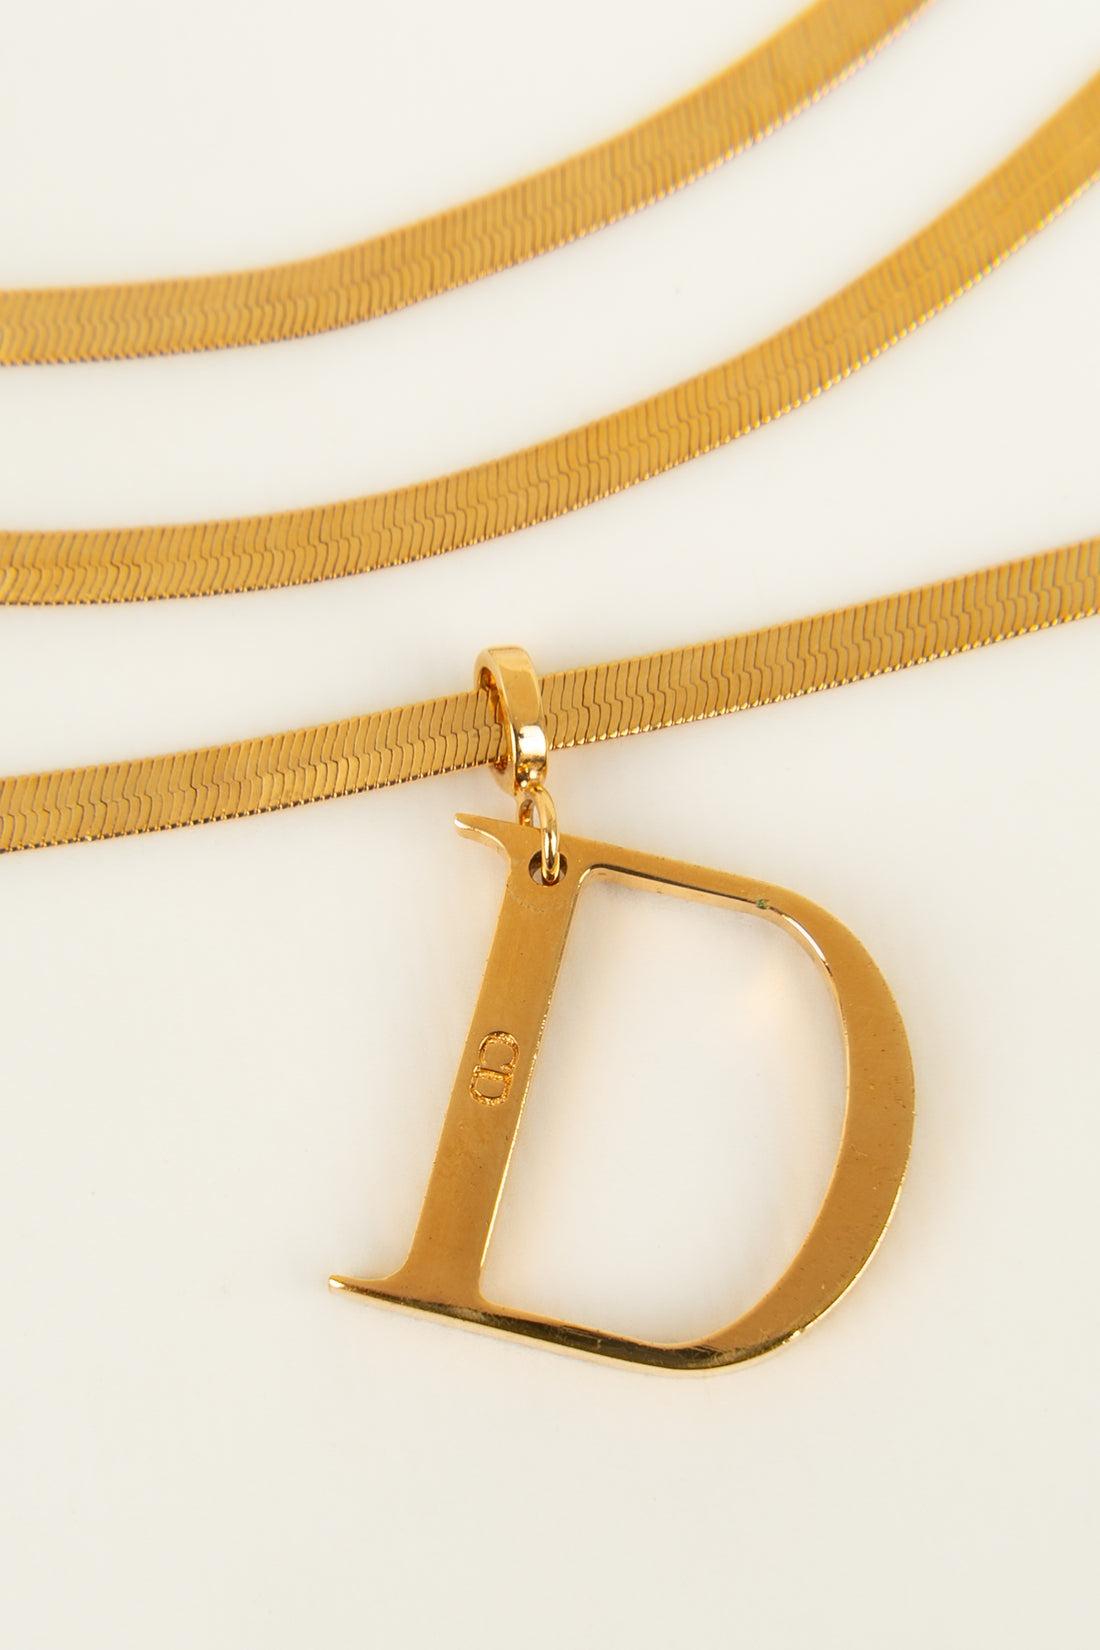  Christian Dior, collier à 3 chaînes en métal plaqué or Pour femmes 